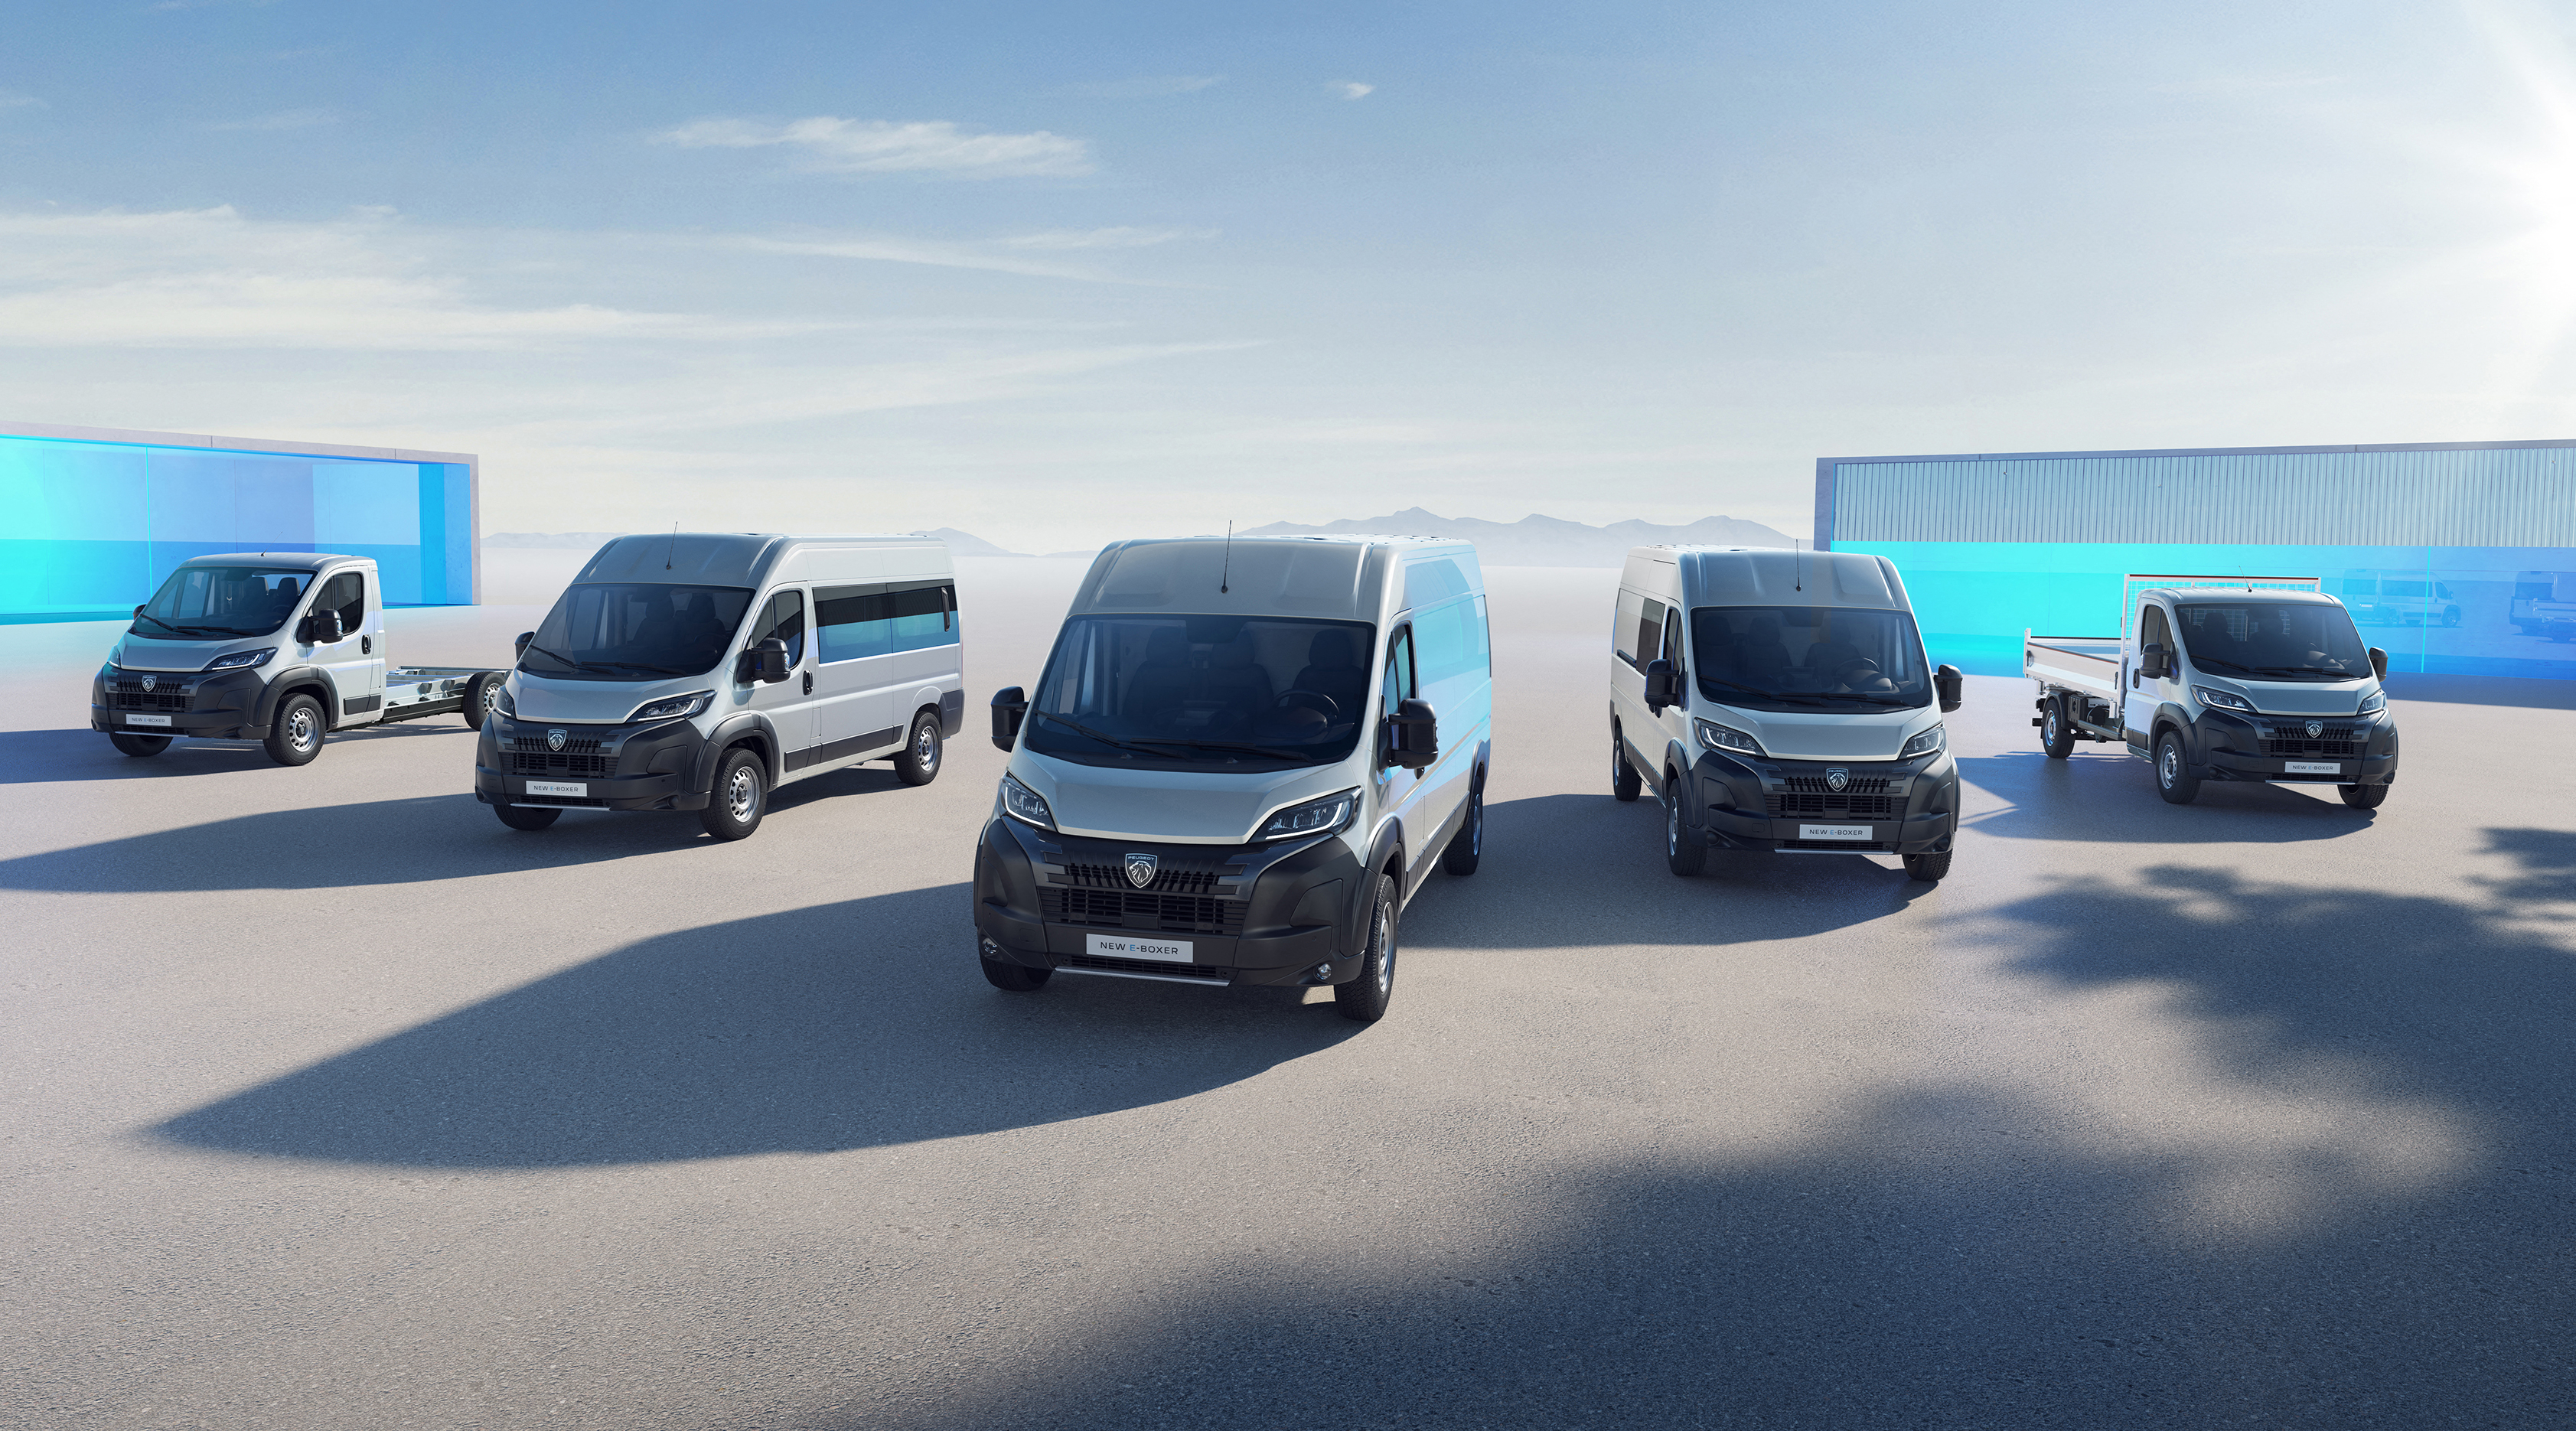 Peugeot e-Expert: Test, Elektro, Transporter, Preis, Reichweite - AUTO BILD